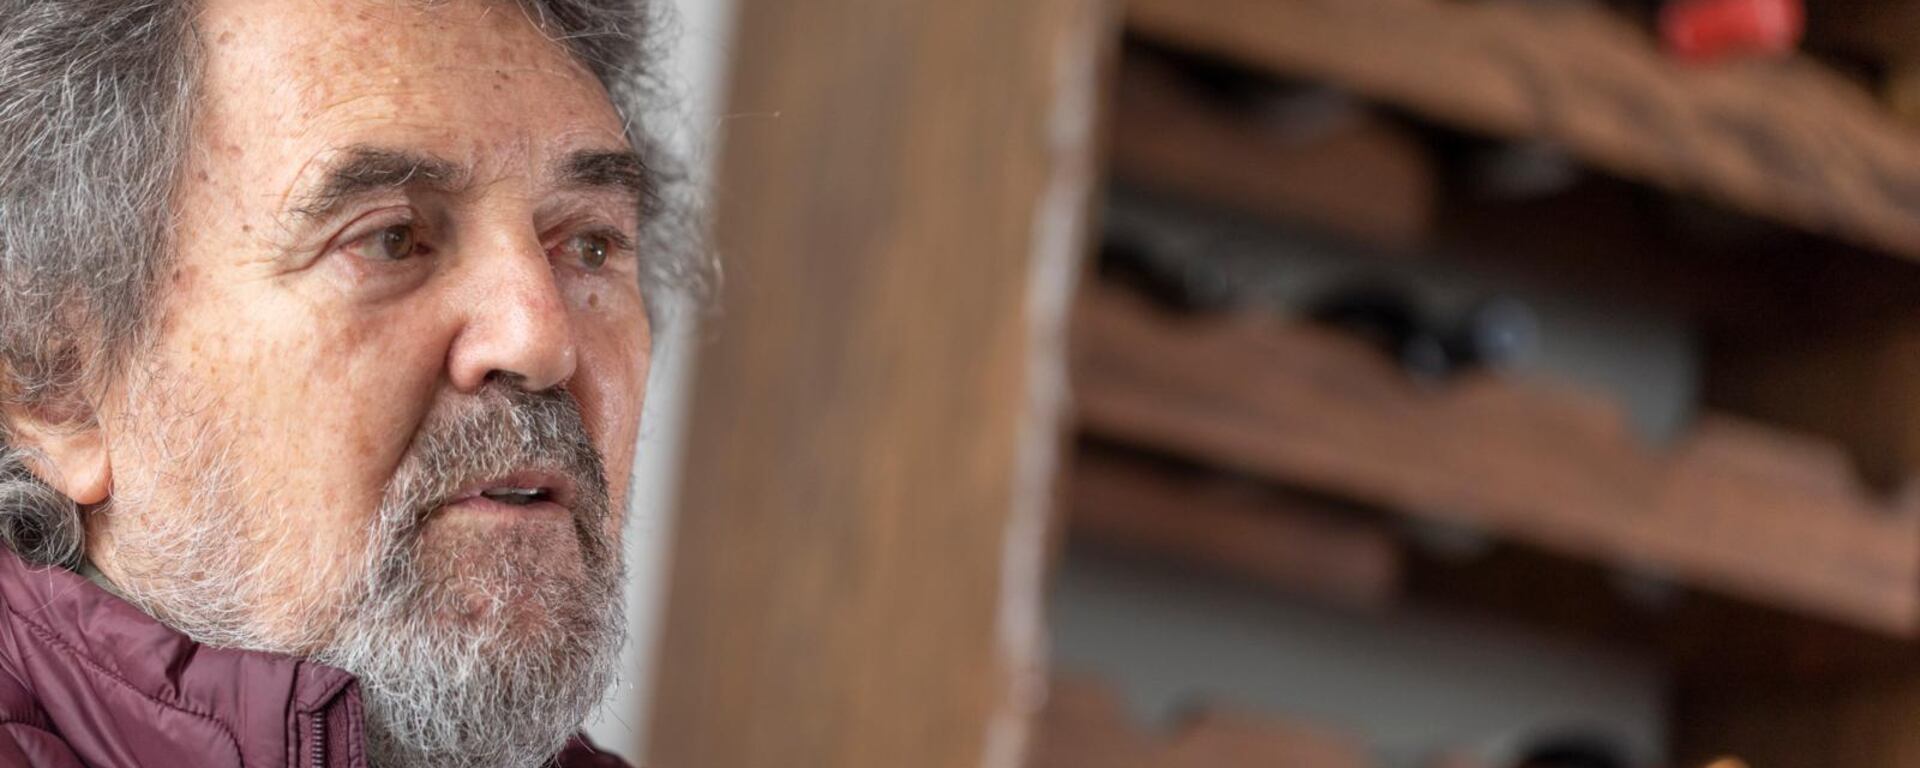 Francisco Lombardi, cineasta peruano: “Hoy soy un director menos irresponsable”